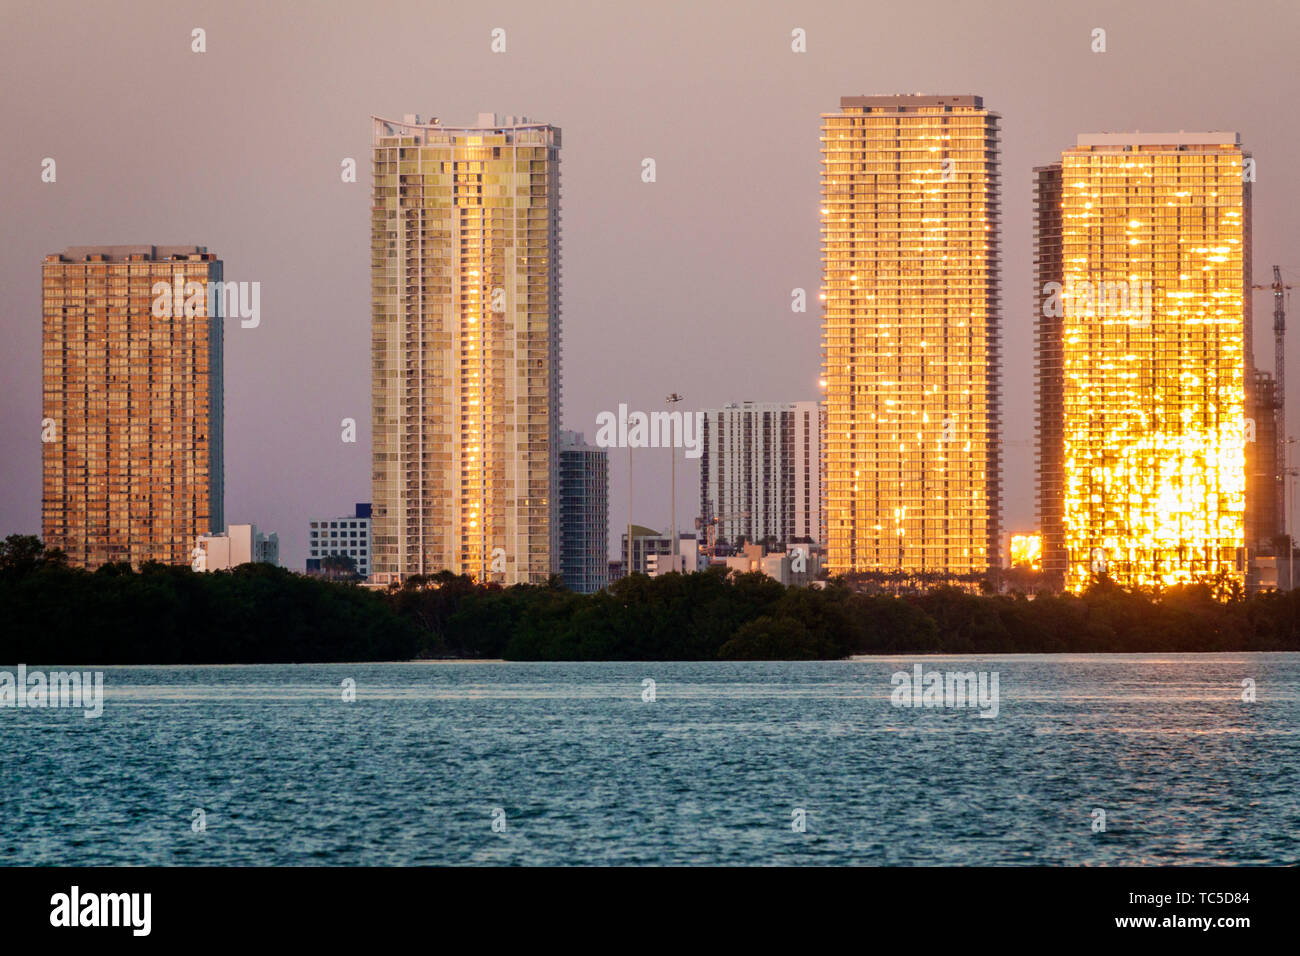 Miami Florida, Edgewater, Biscayne Bay, Hochhaus Wolkenkratzer Gebäude Luxus Wohngebäude, Eigentumswohnung Wohnapartments Stockfoto